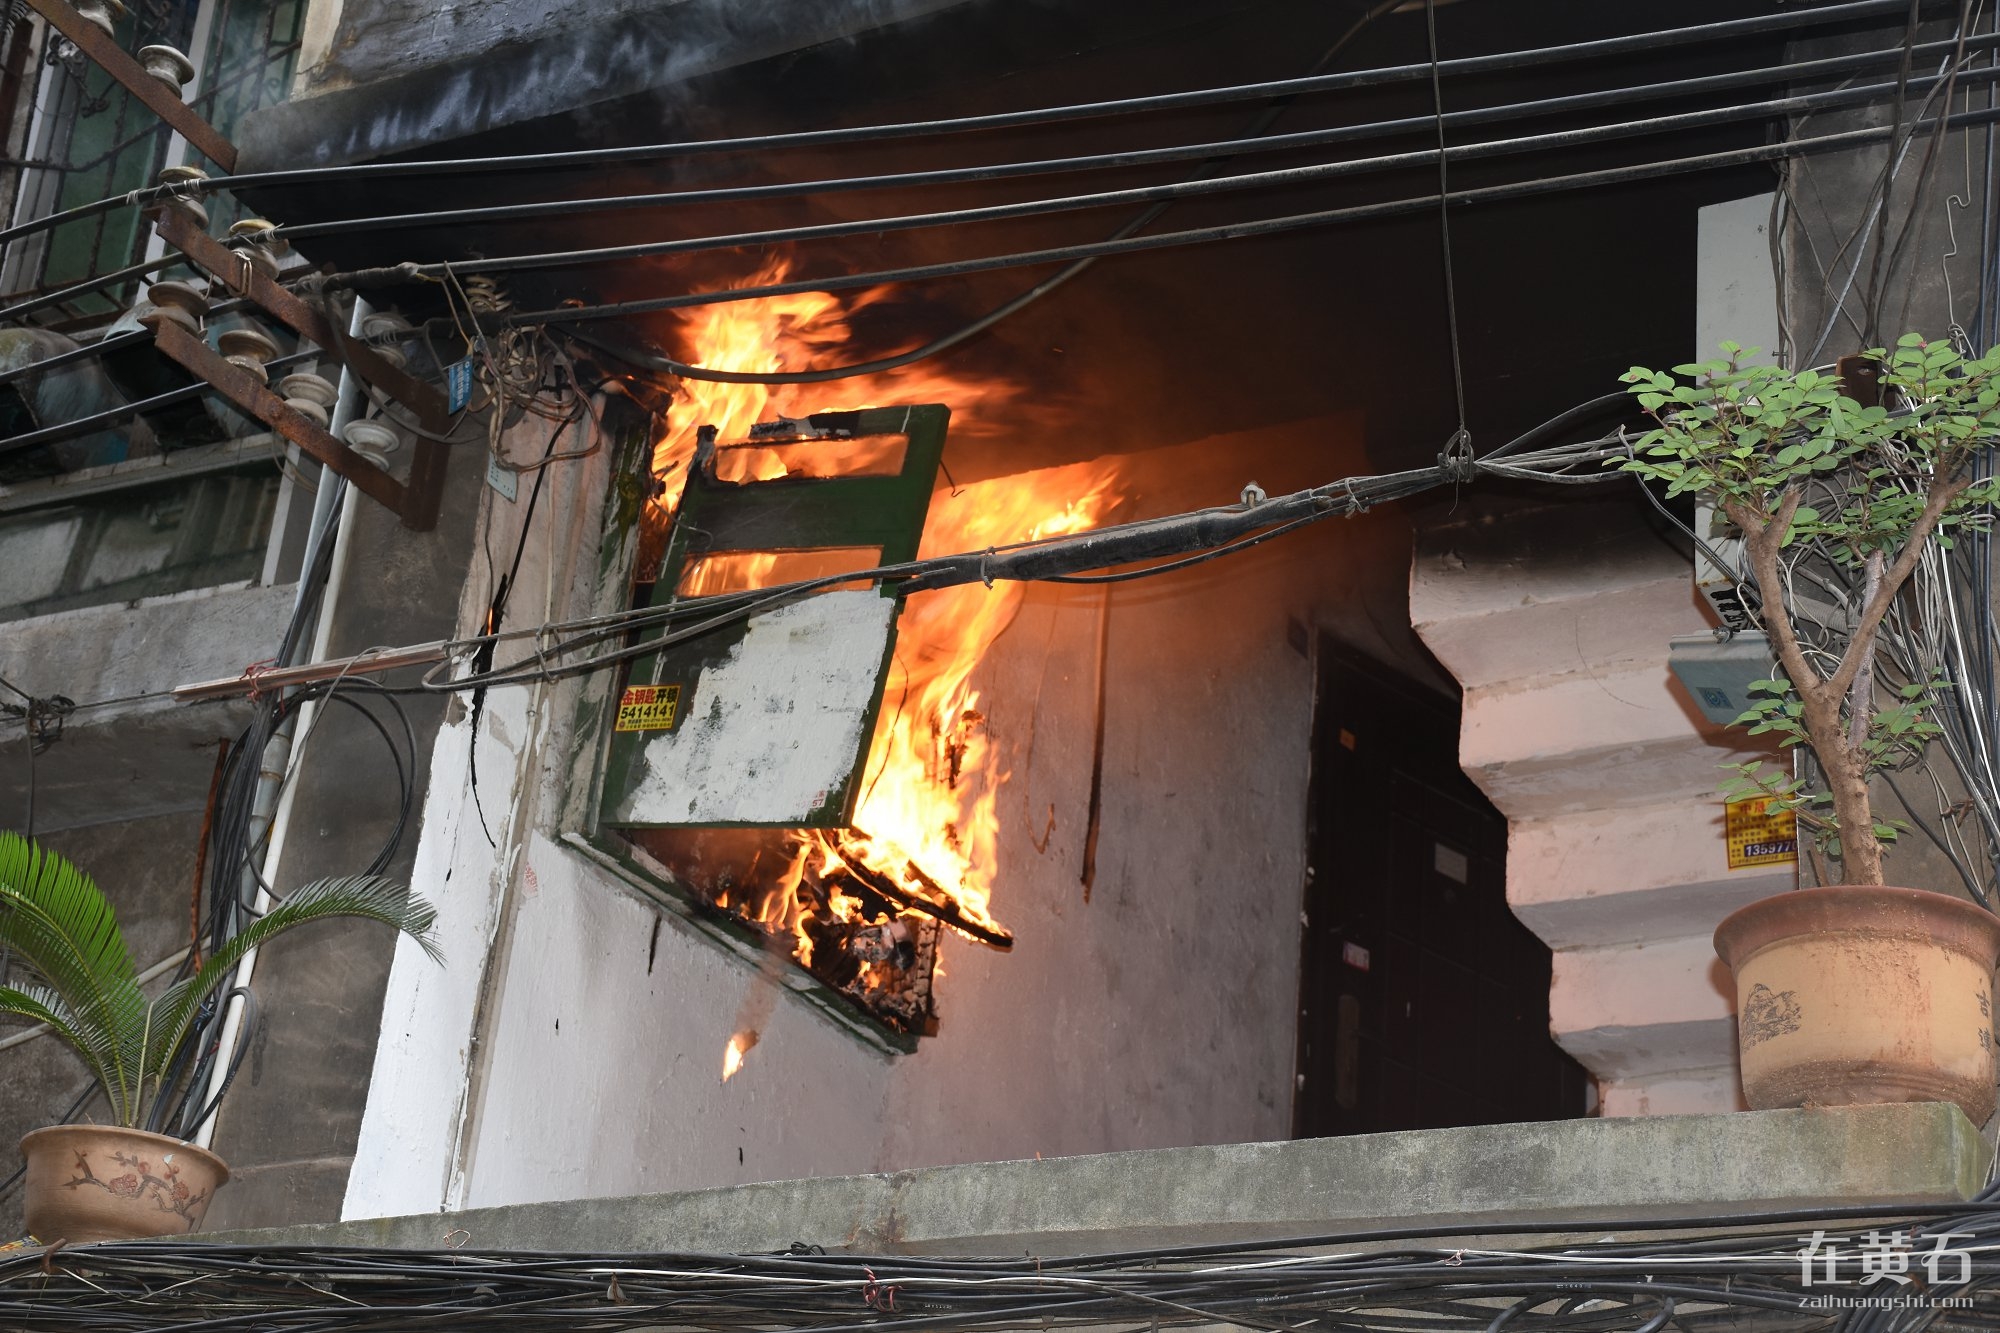 黄石港区一居民楼电表箱起火消防官兵紧急排险